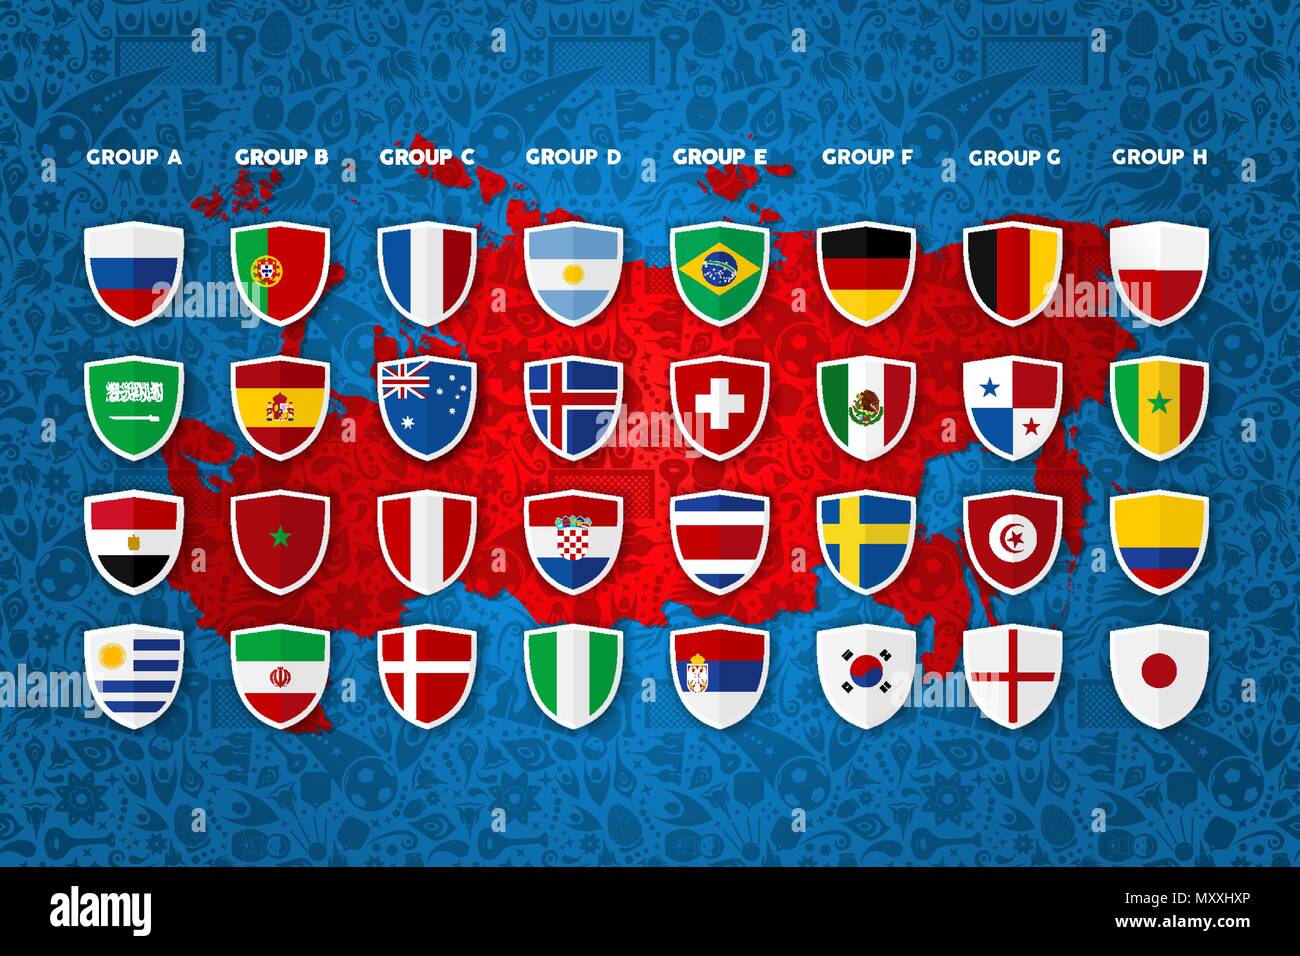 Fußball-Event Team Liste Vorlage. Special Sport Gruppe planen mit qualifizierten Länder und ihre Flaggen auf russische Karte Hintergrund. EPS 10 Vektor. Stock Vektor